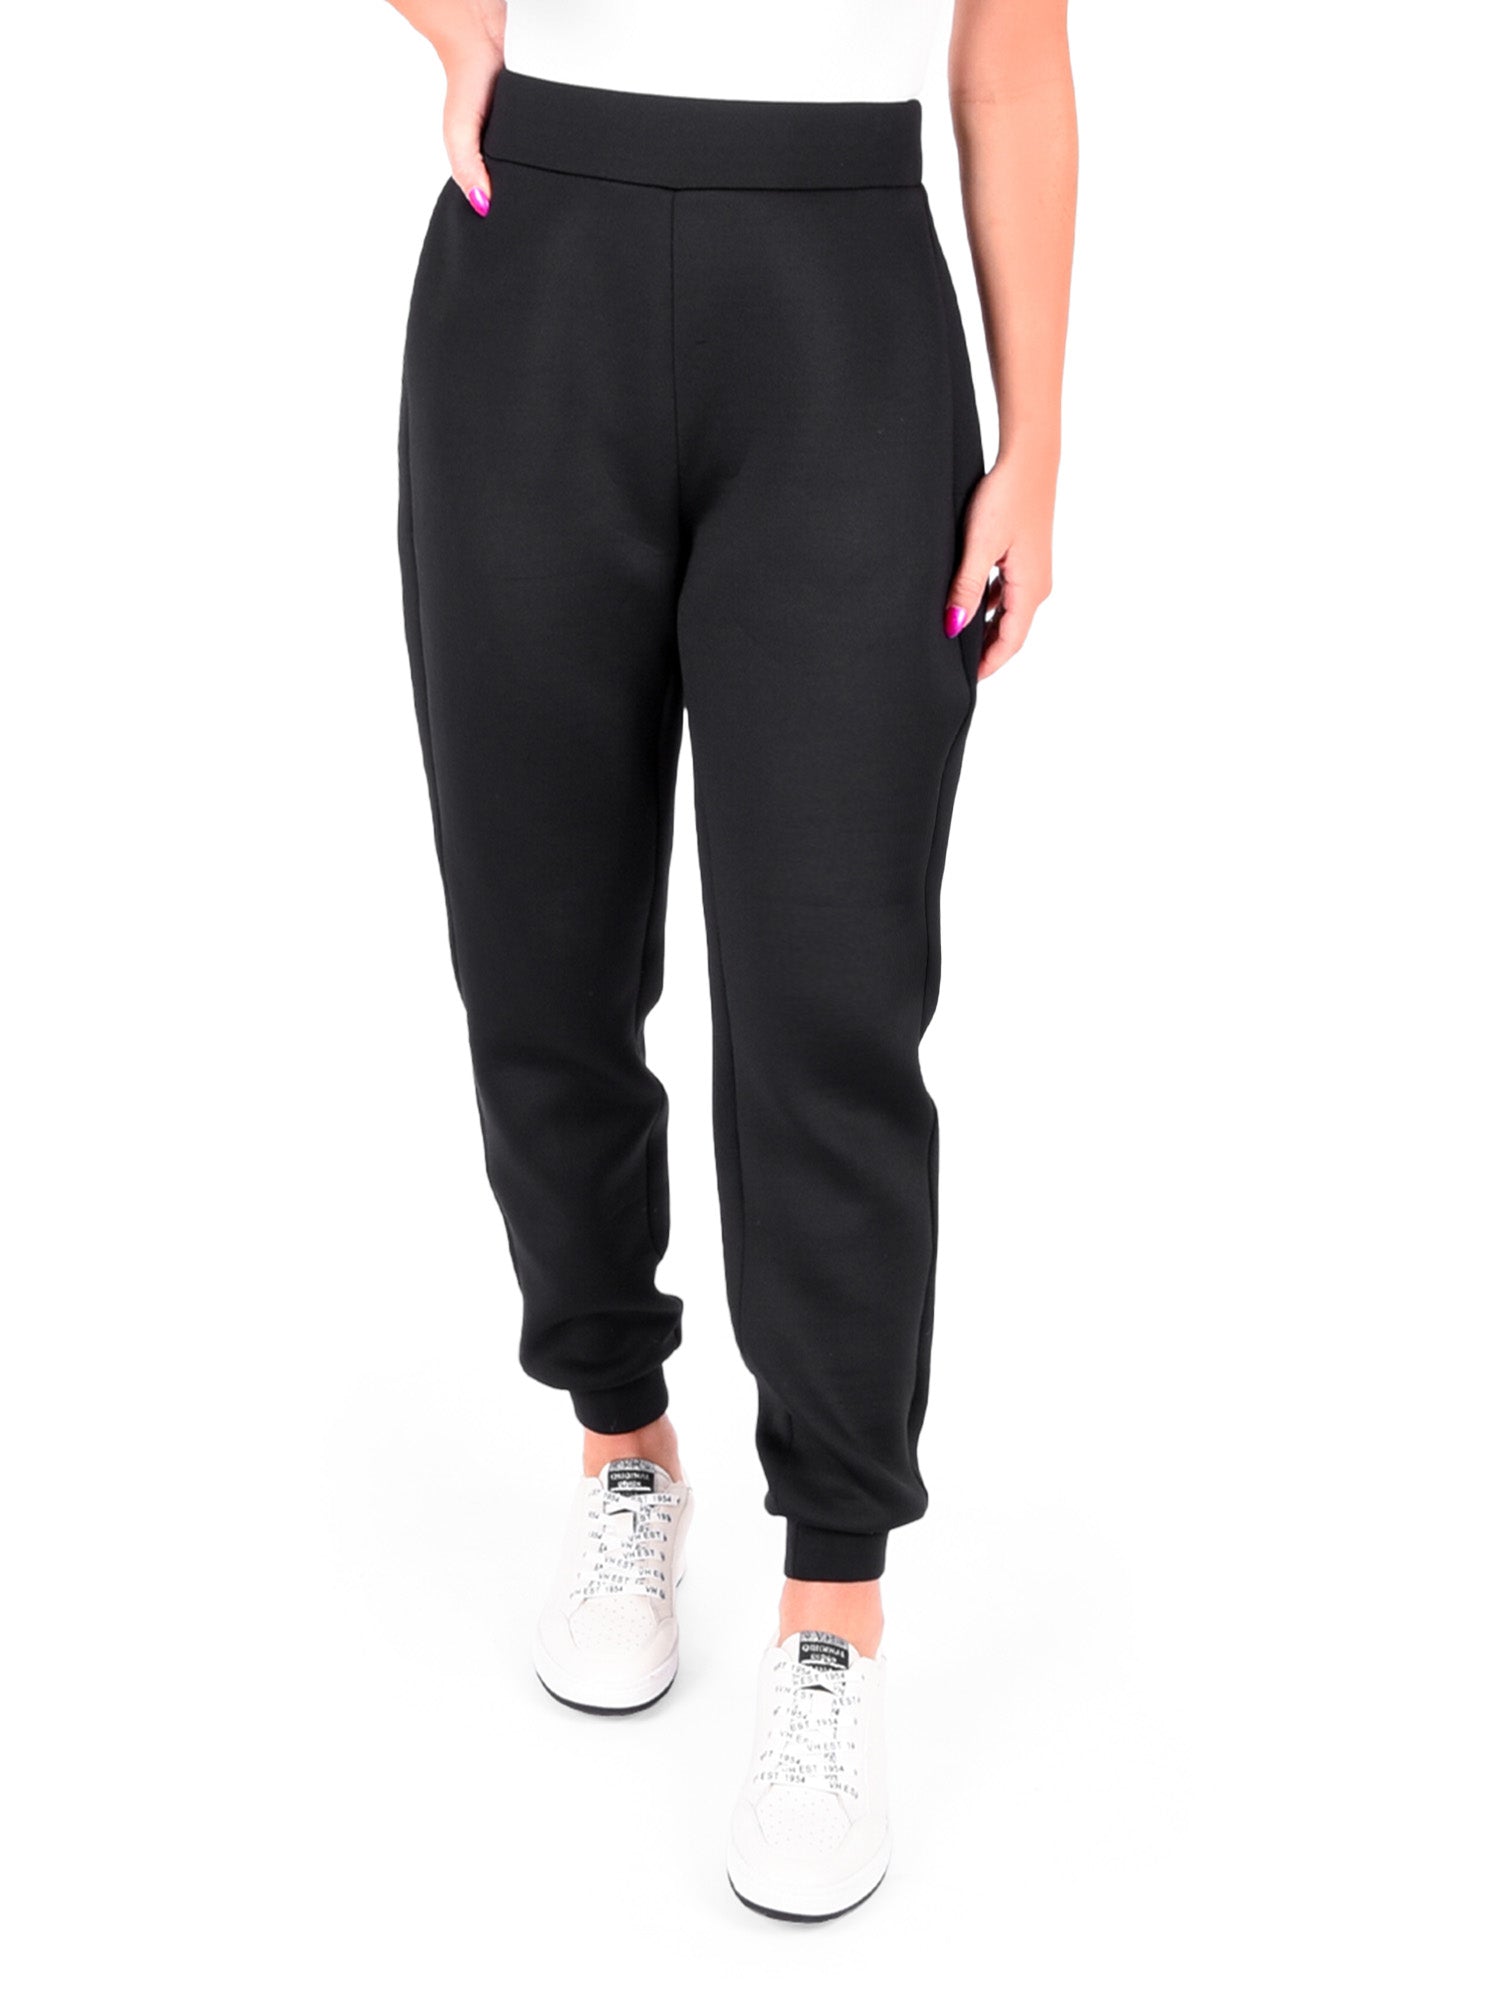 Women's Sweatpants & Joggers, Hello Friends Boutique